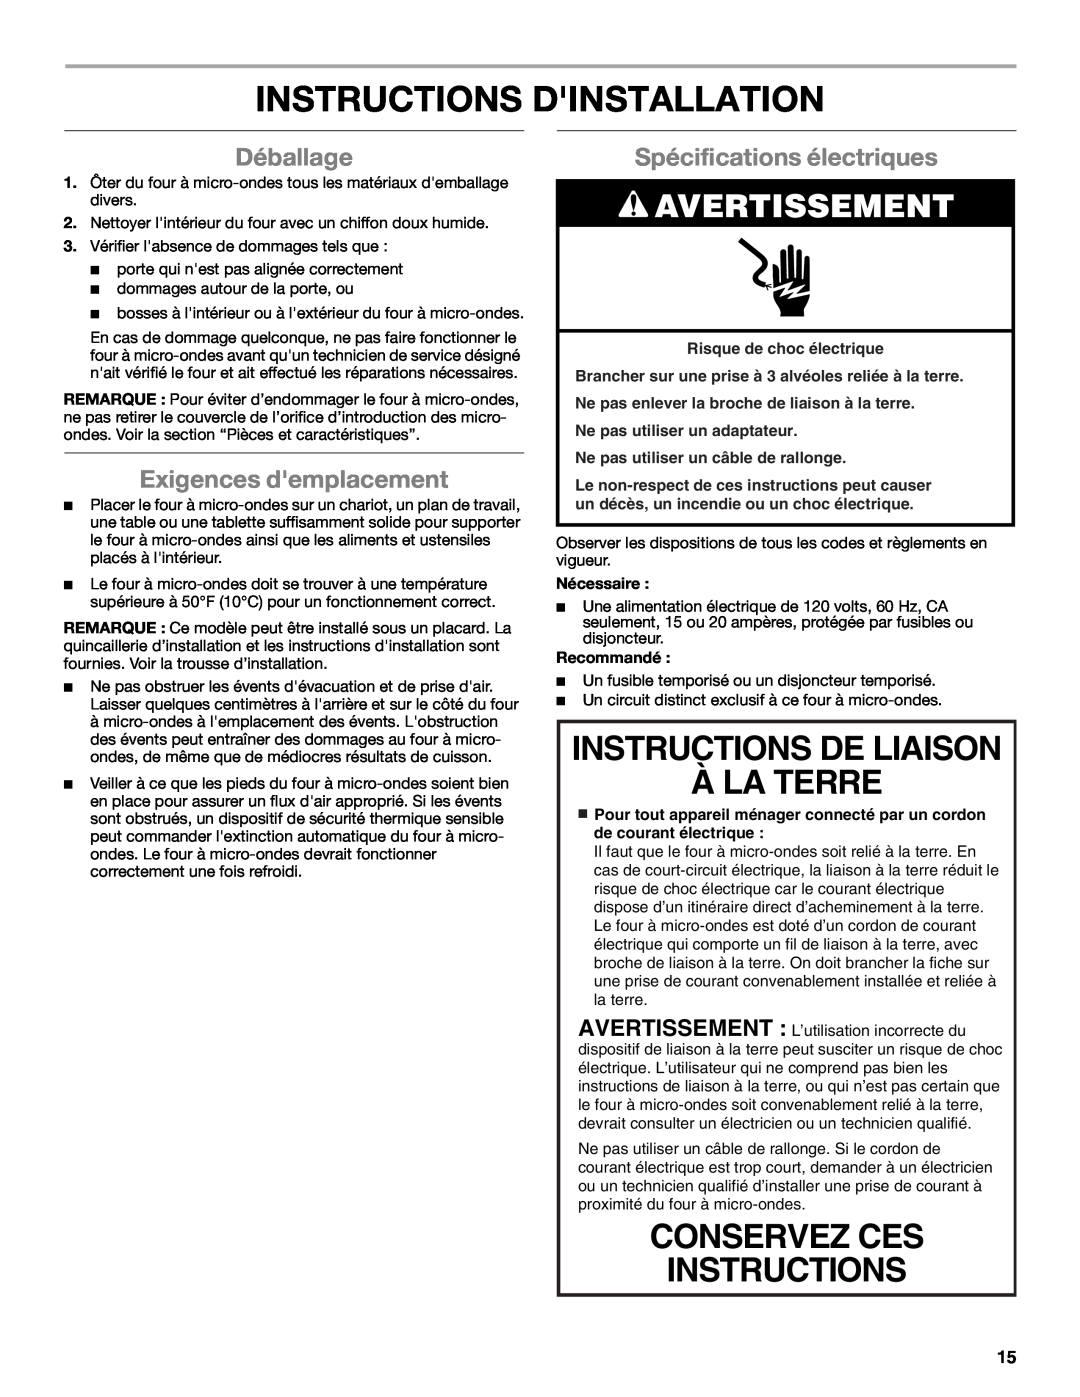 Whirlpool WMC10007 manual Instructions Dinstallation, Instructions De Liaison À La Terre, Avertissement, Déballage 